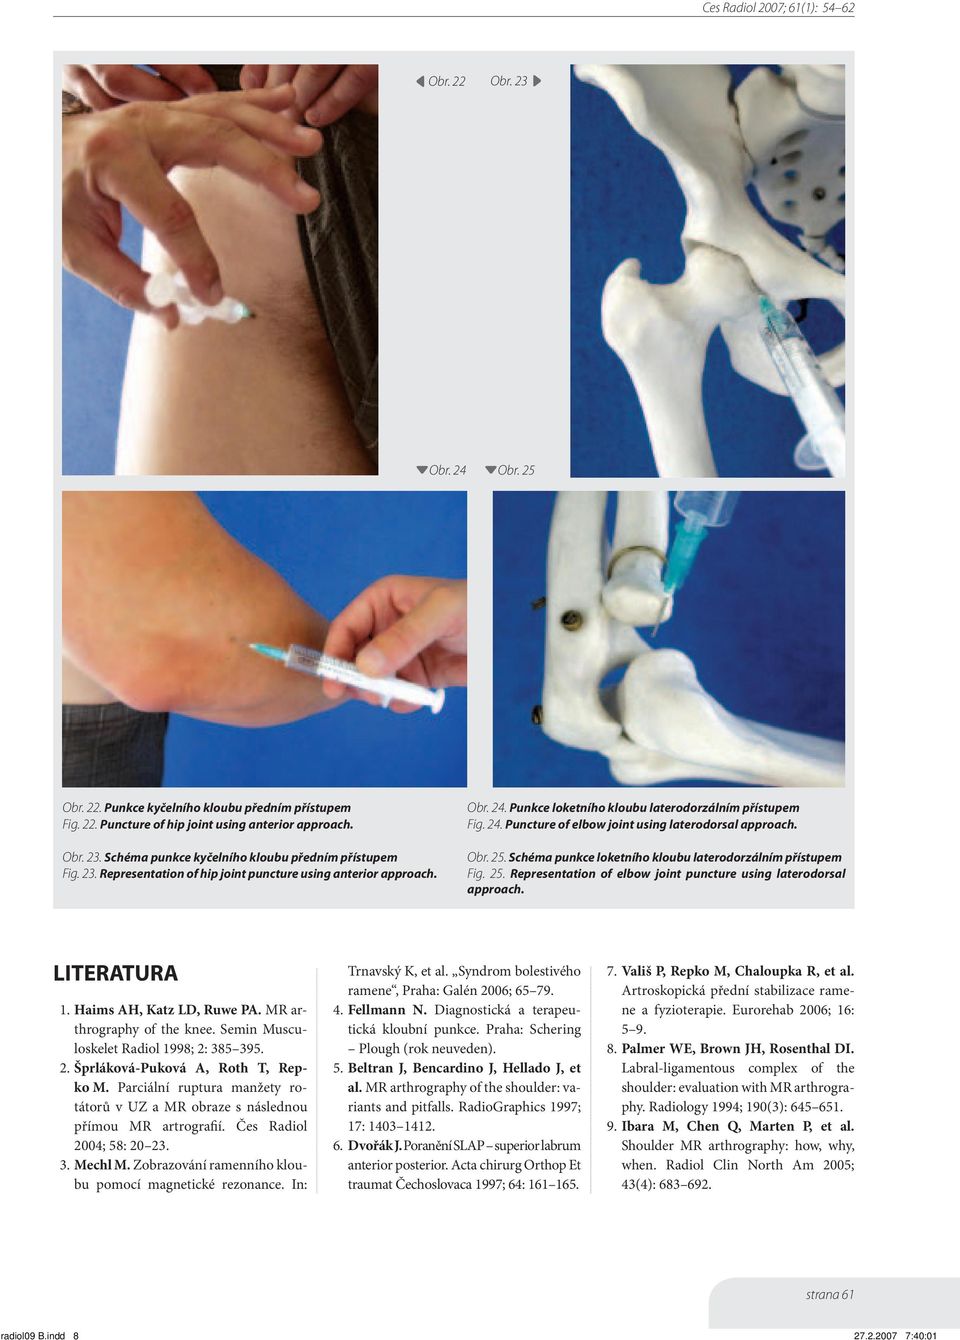 Schéma punkce loketního kloubu laterodorzálním přístupem Fig. 25. Representation of elbow joint puncture using laterodorsal approach. LITERATURA 1. Haims AH, Katz LD, Ruwe PA.